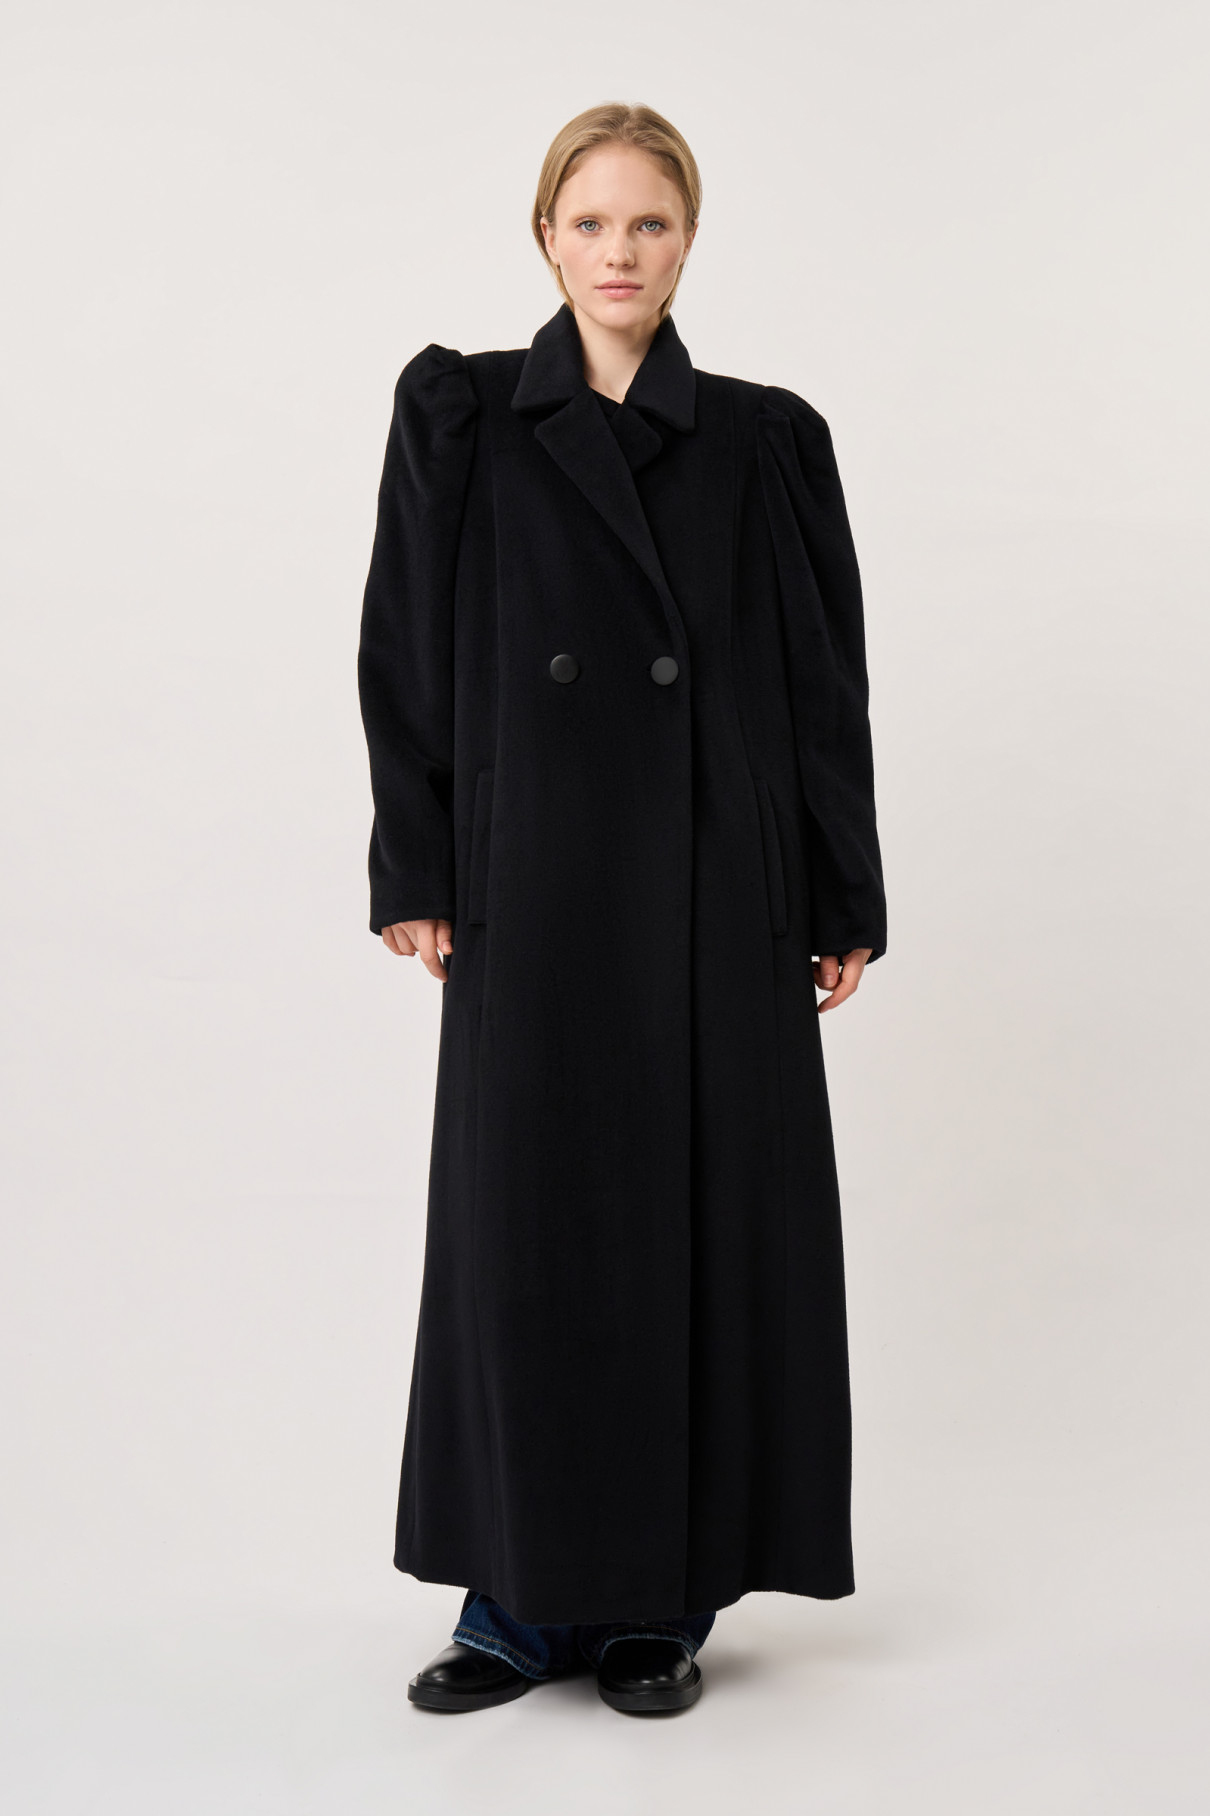 Двубортное черное пальто , Чёрный, арт. FR21-ПК-10-чр-4 купить в интернет-магазине